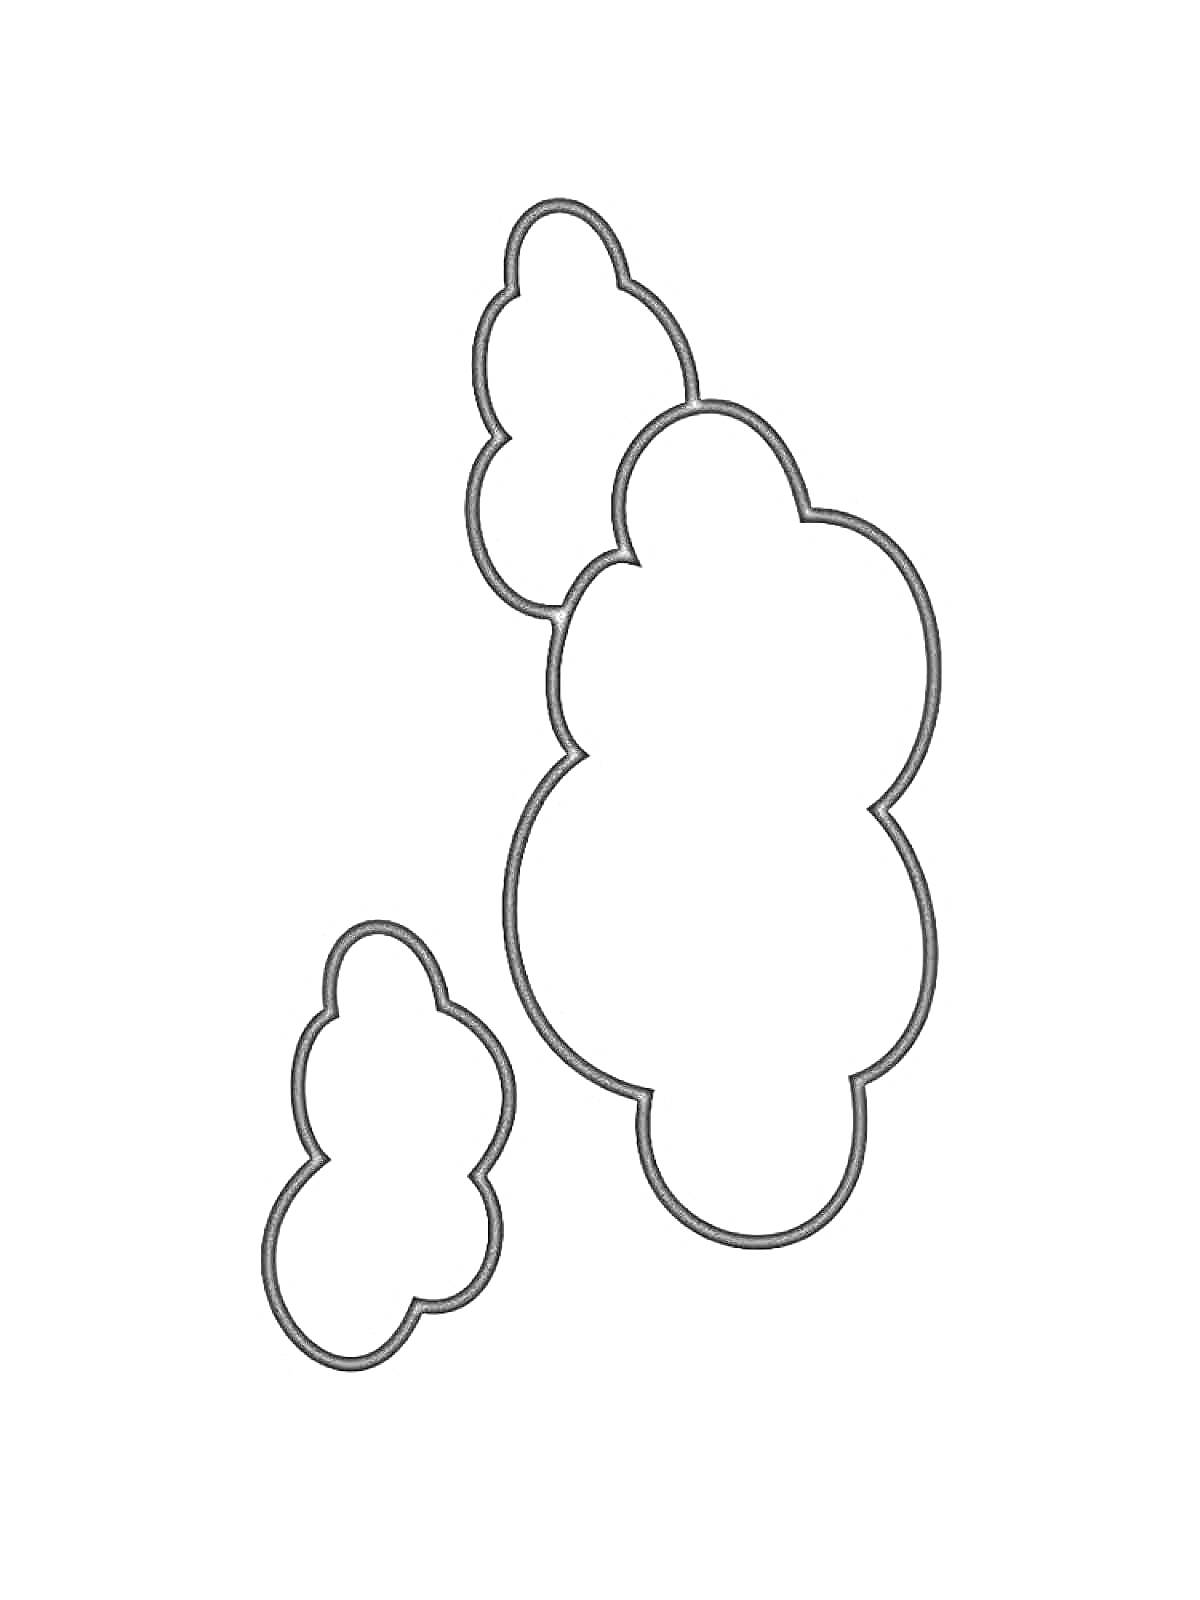 Раскраска Три облака разного размера на фоне